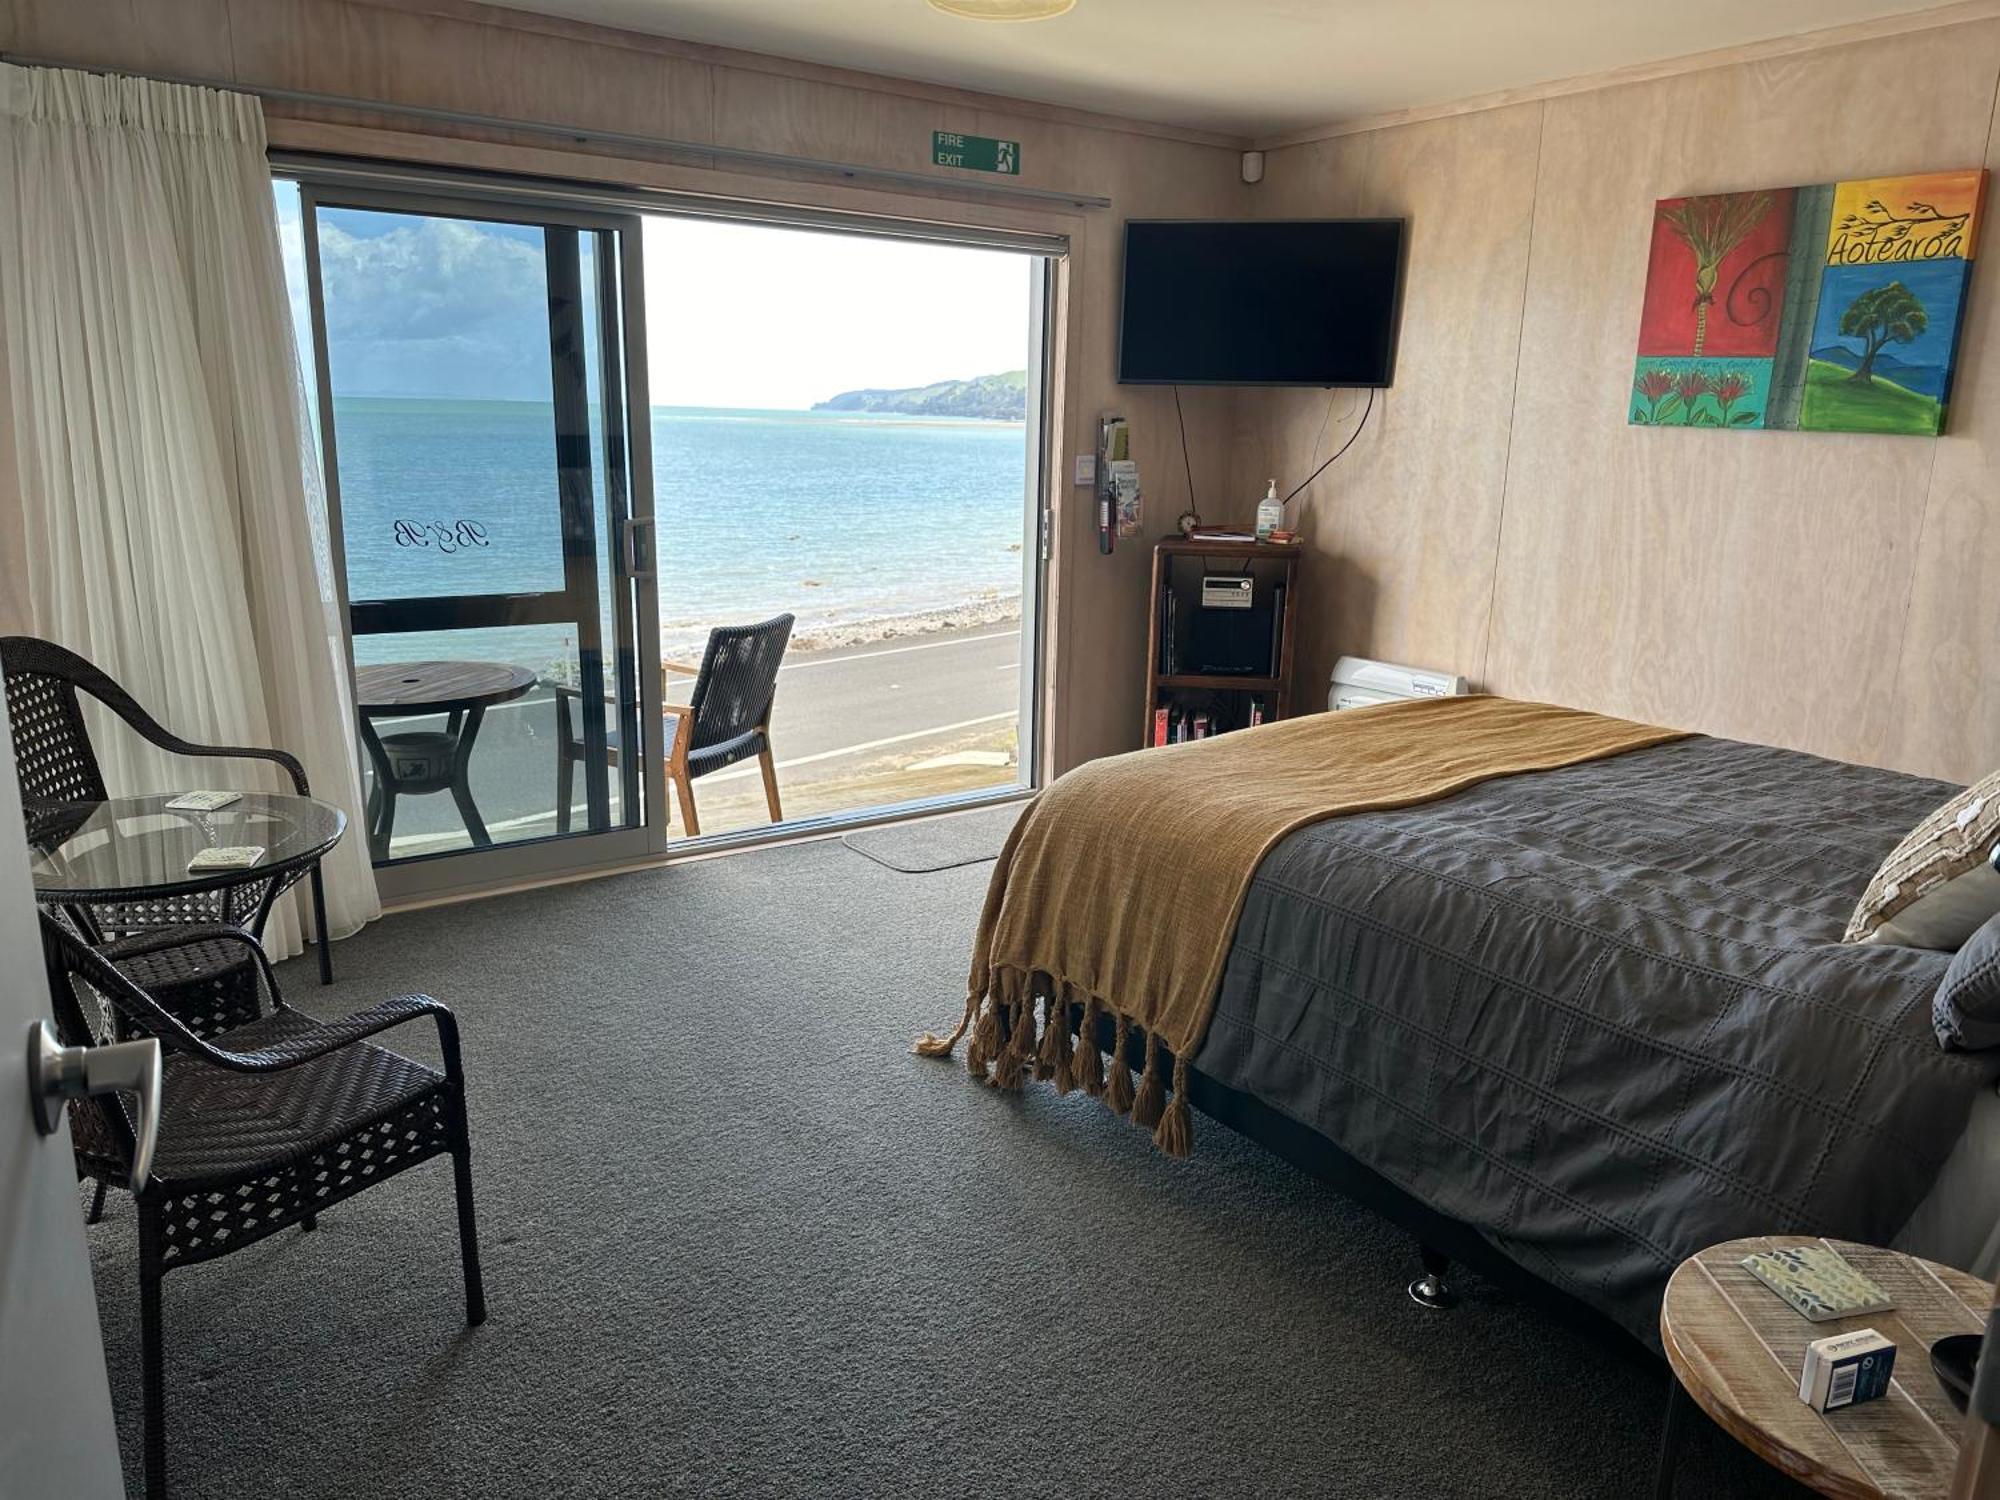 Te Mata Bay Seaviews Bed and Breakfast Tapu Exterior foto